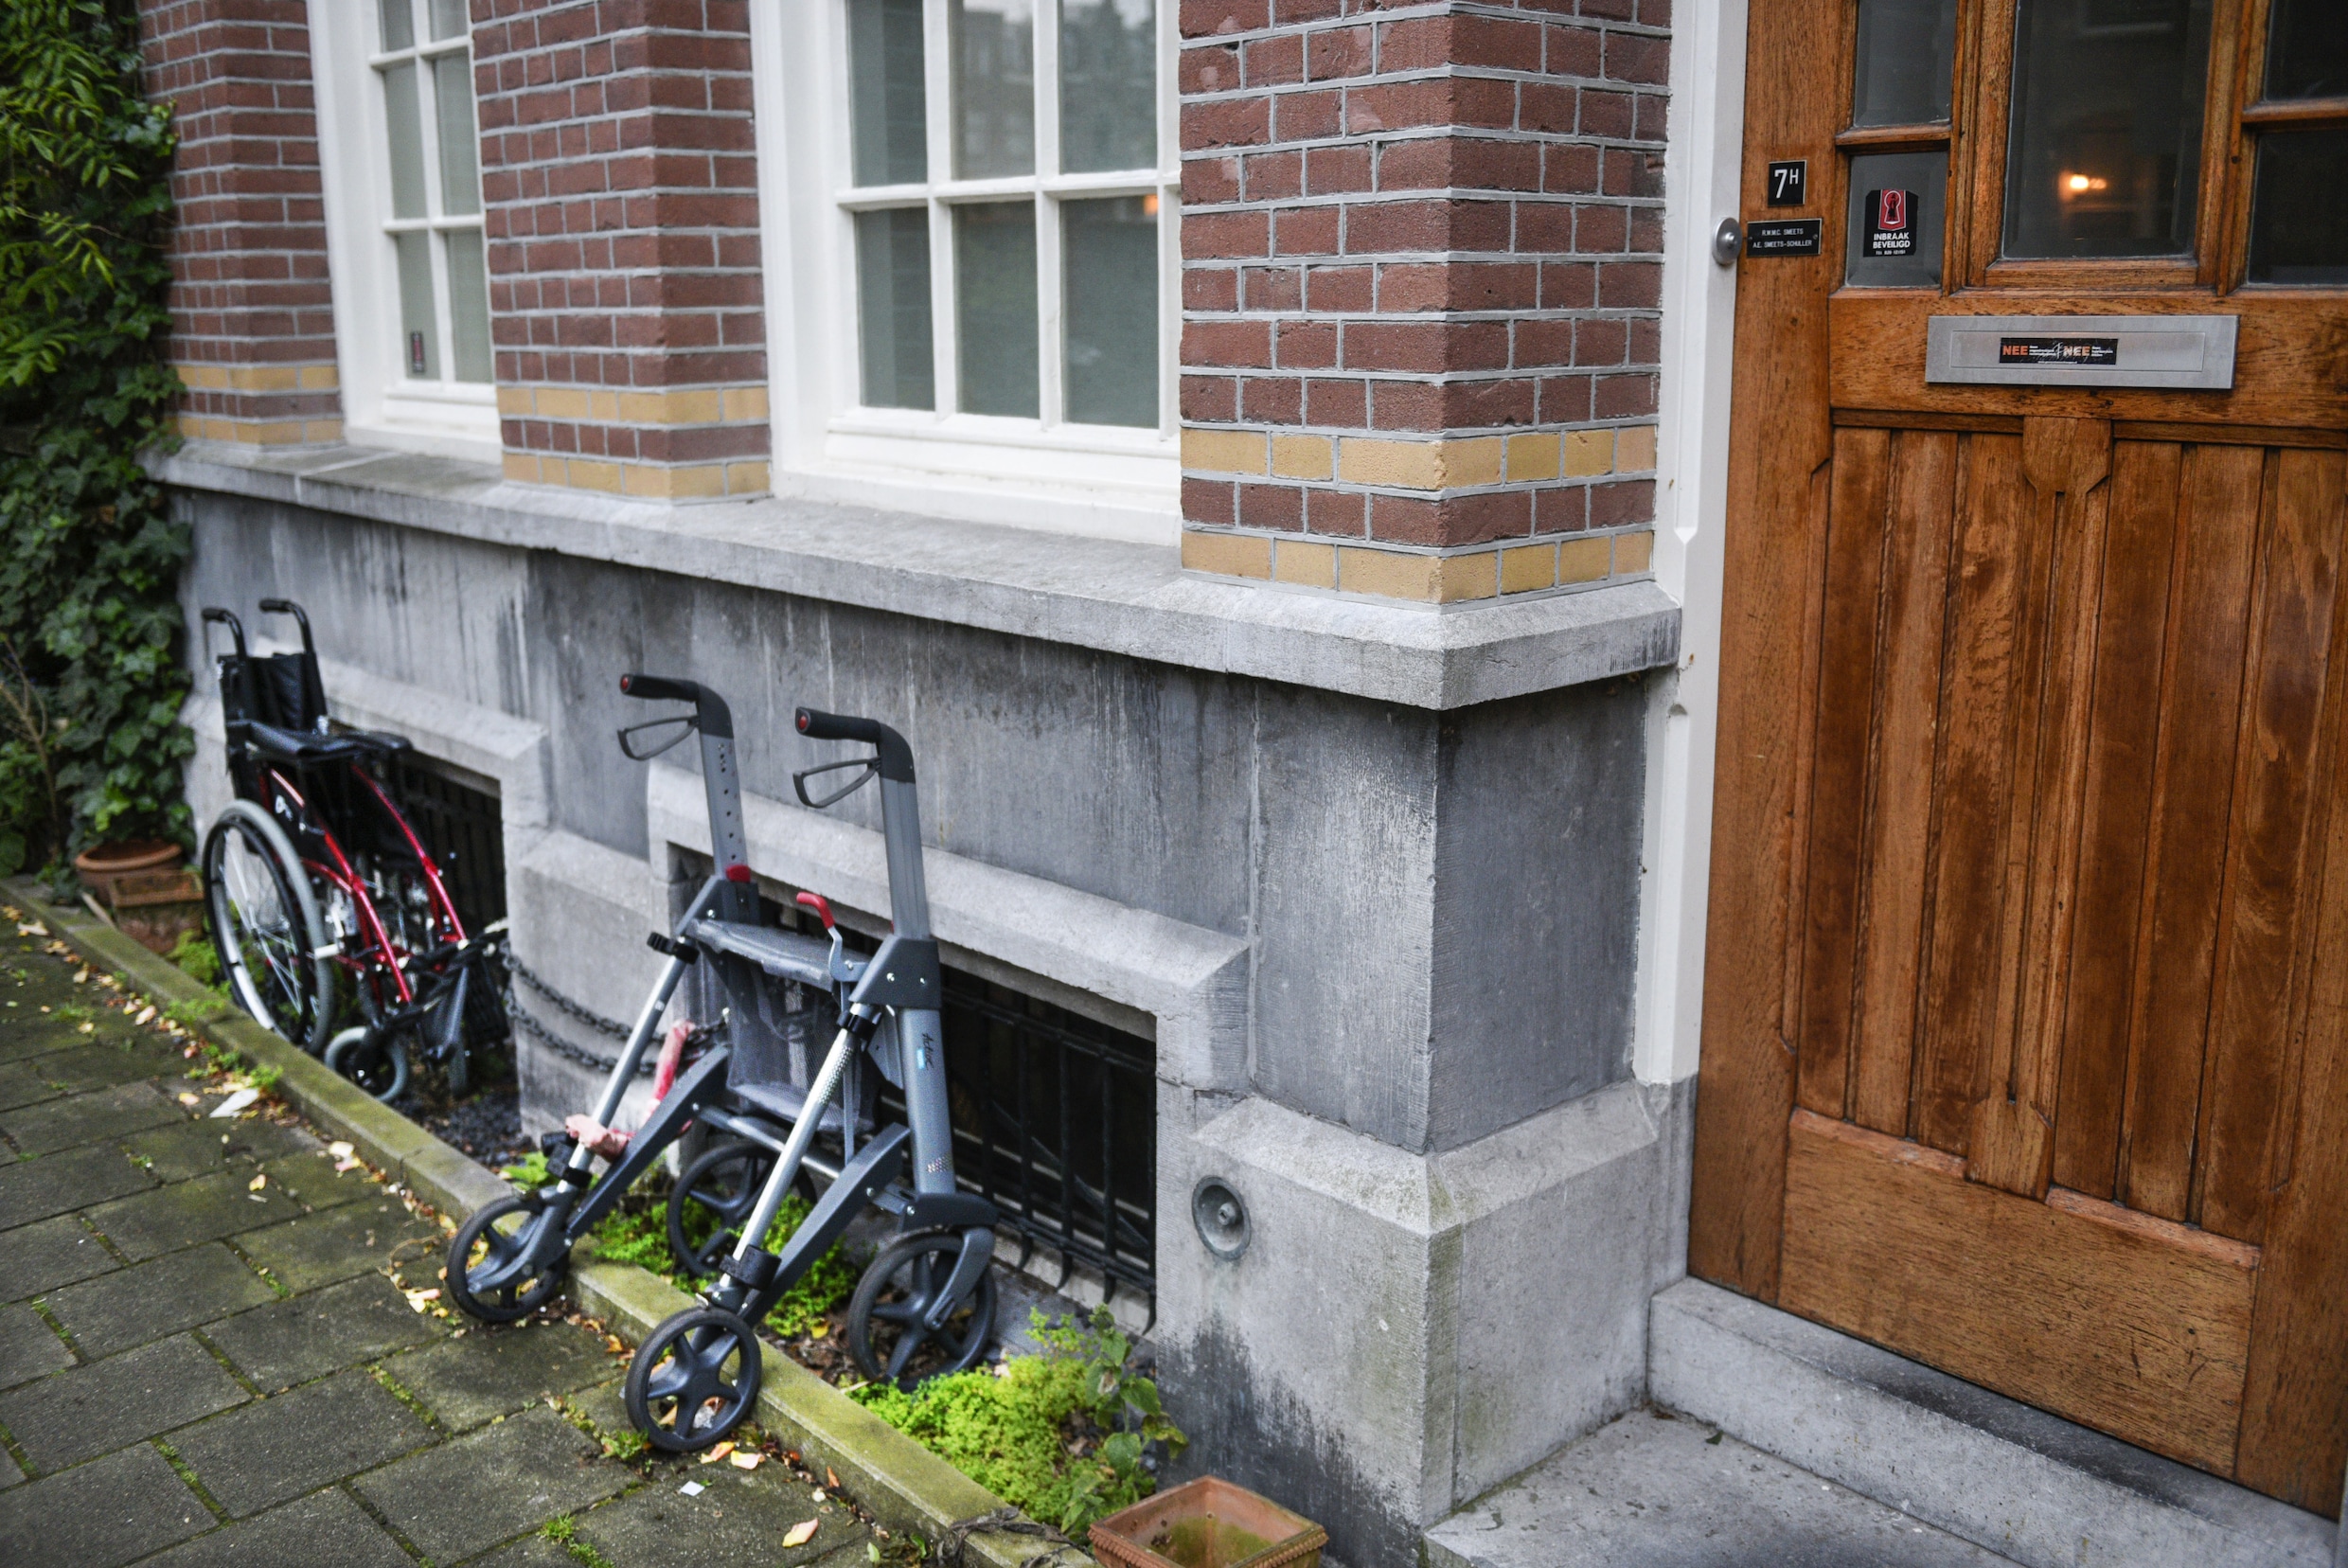 Zorgcrisis voor ouderen: Amsterdam zet in op speciale flats zodat senioren langer thuis kunnen blijven wonen